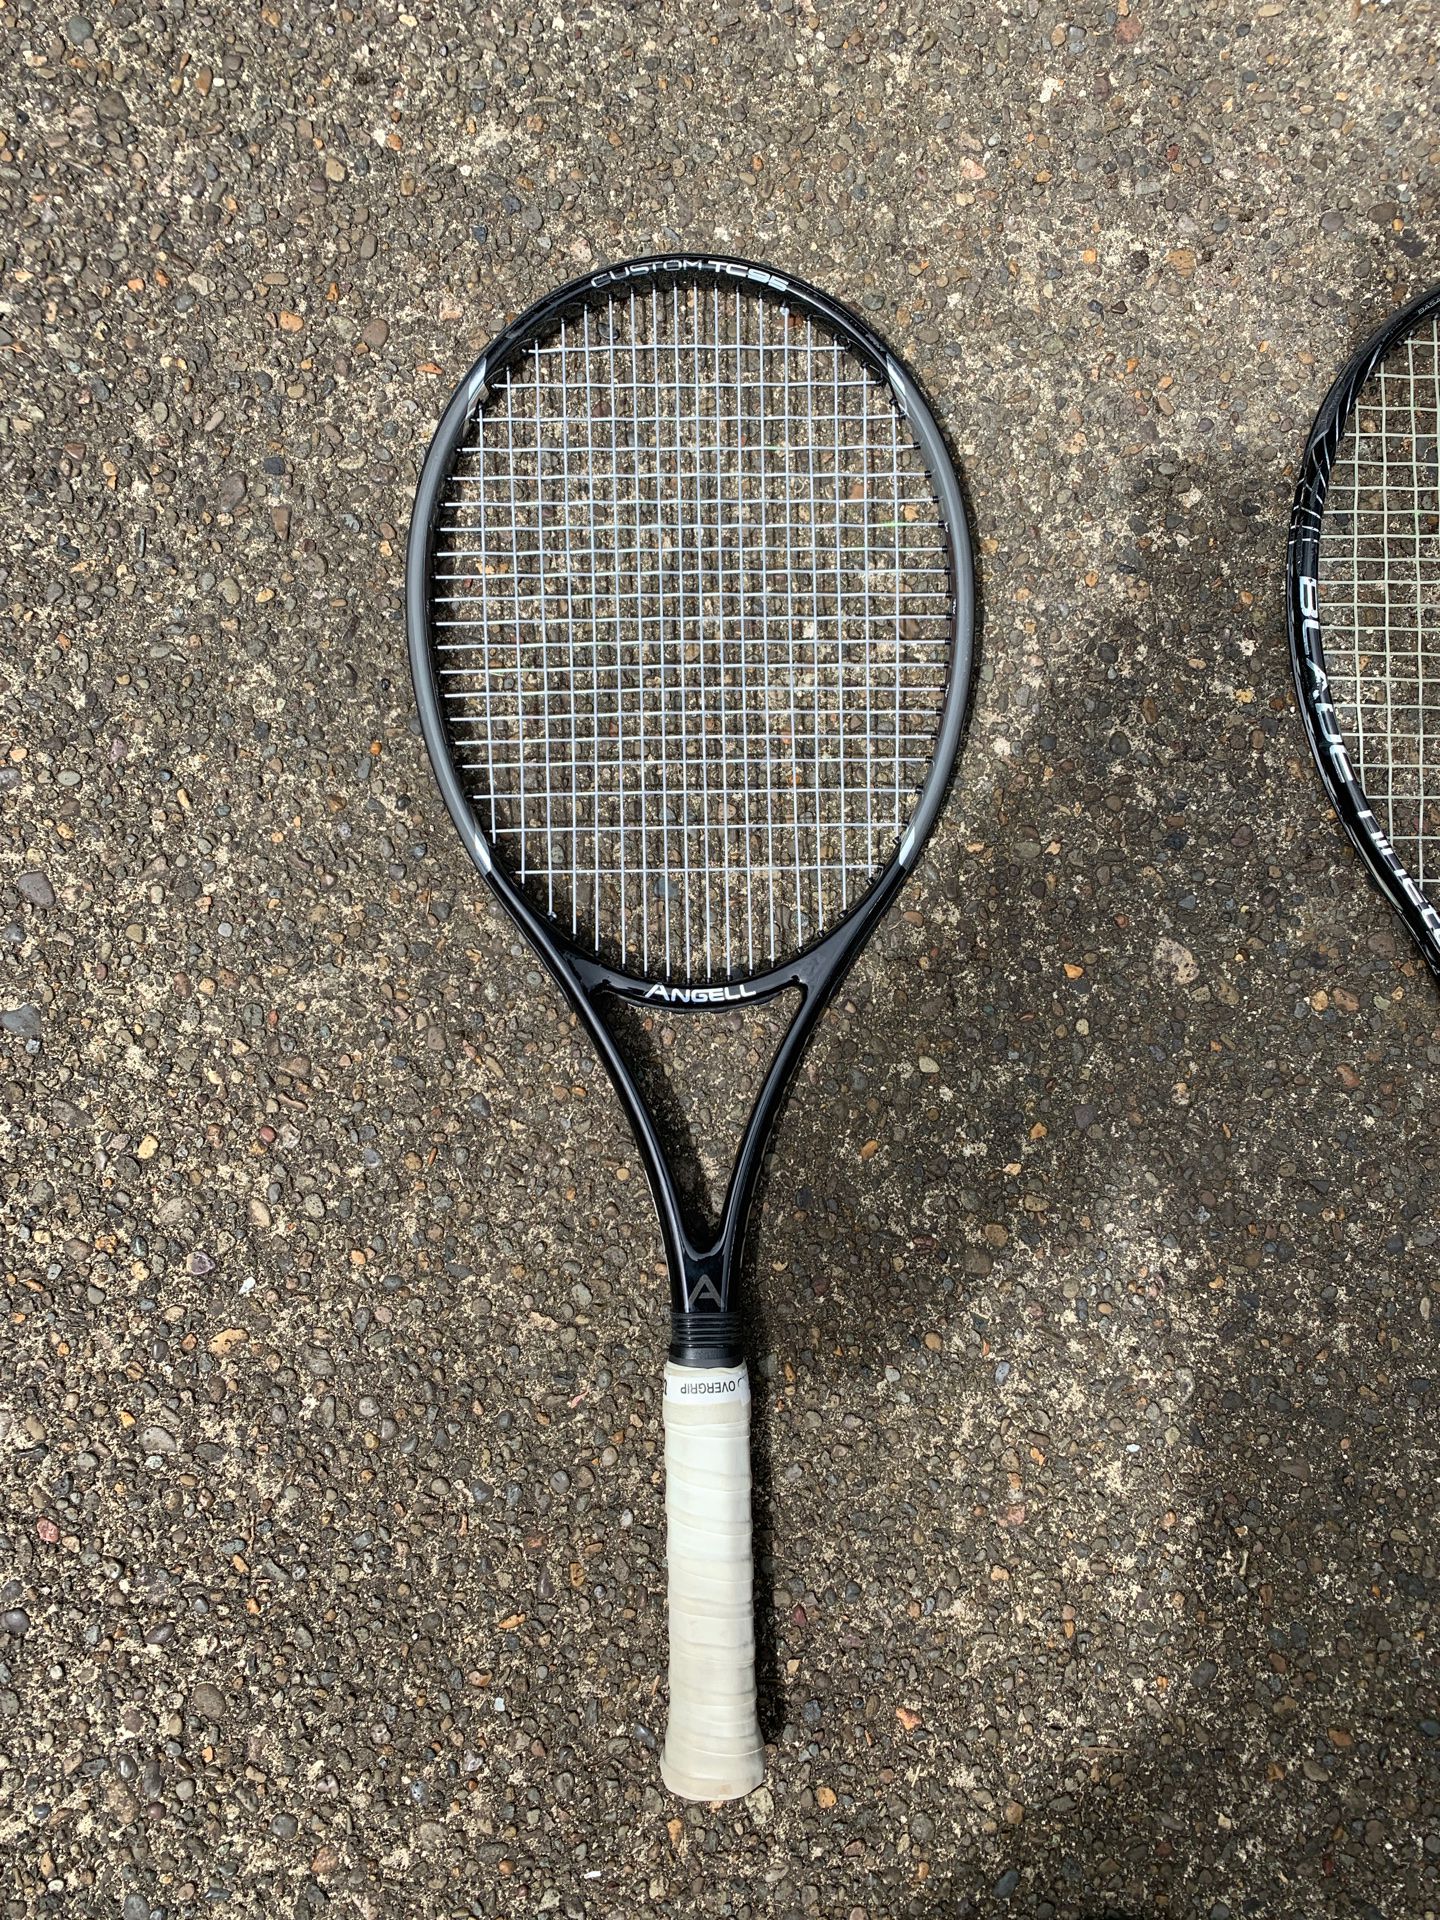 Angell TC95 adult tennis racket